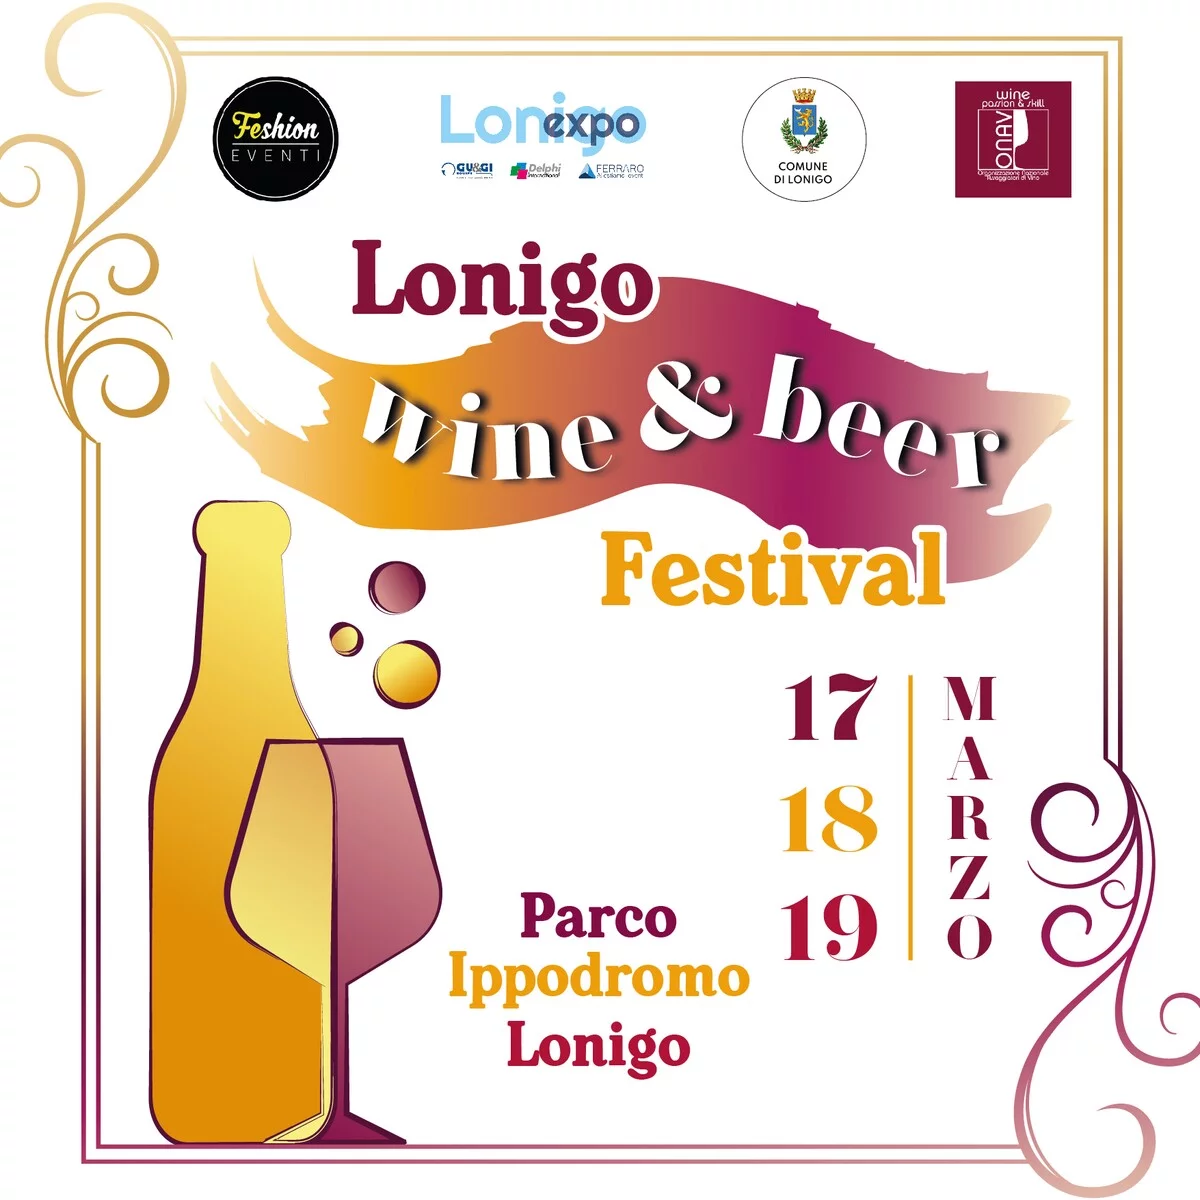 Lonigo Wine & Beer Festival